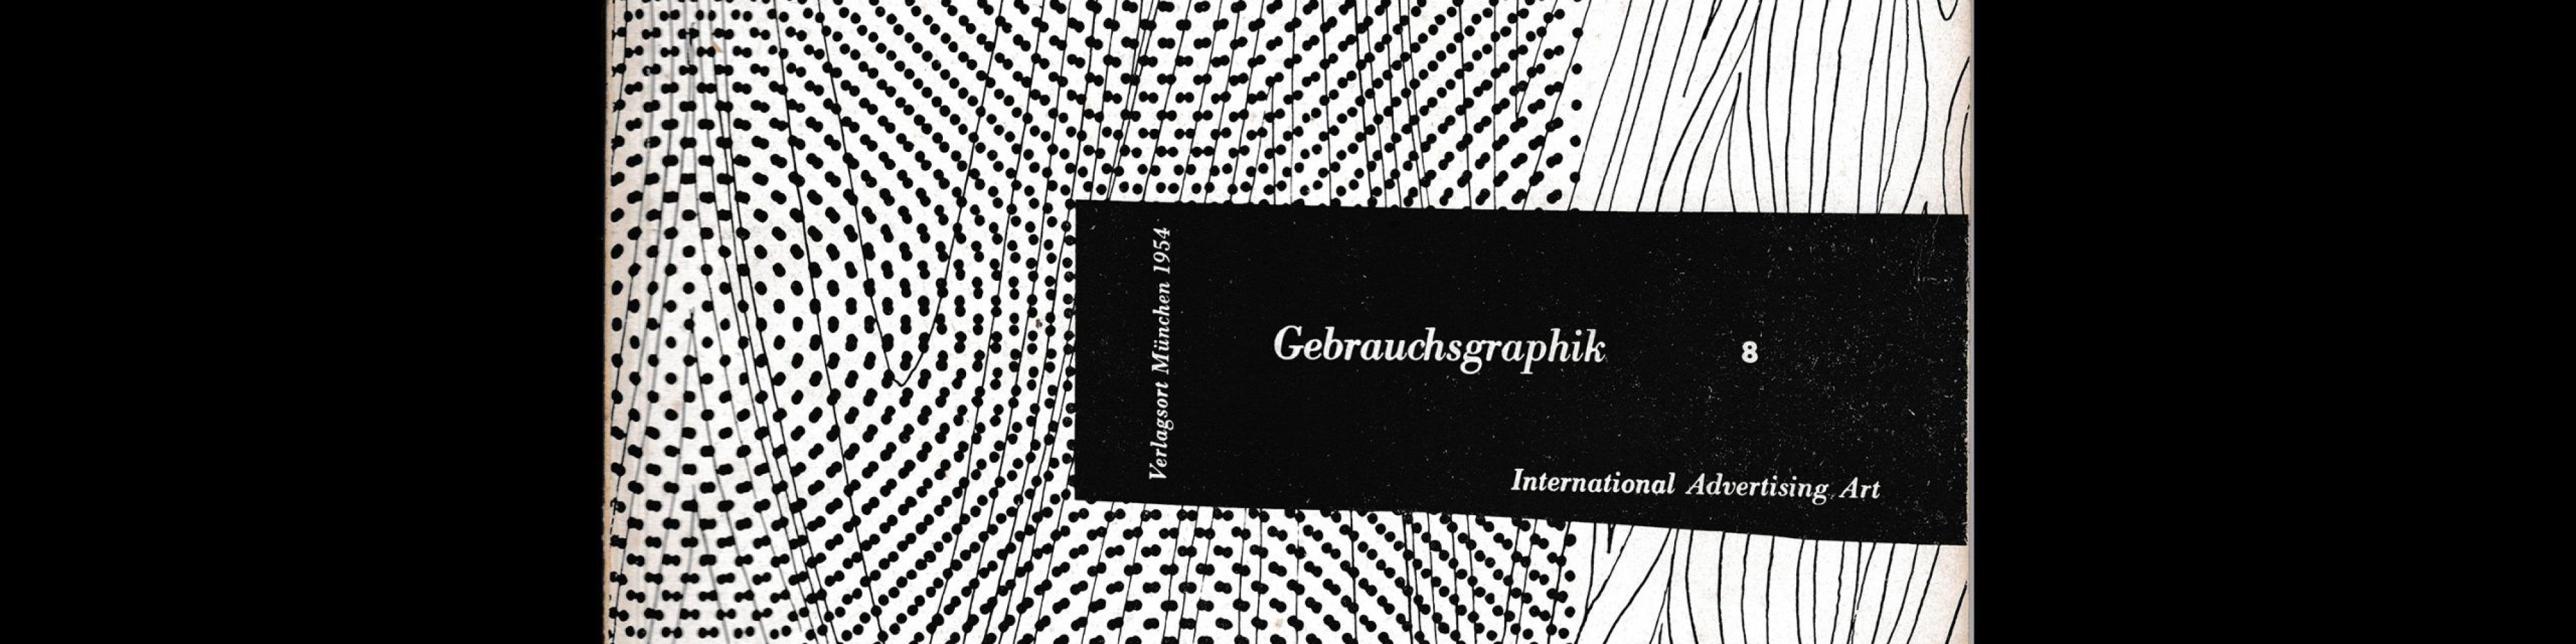 Gebrauchsgraphik, 8, 1954. Cover design by Helmut Lortz